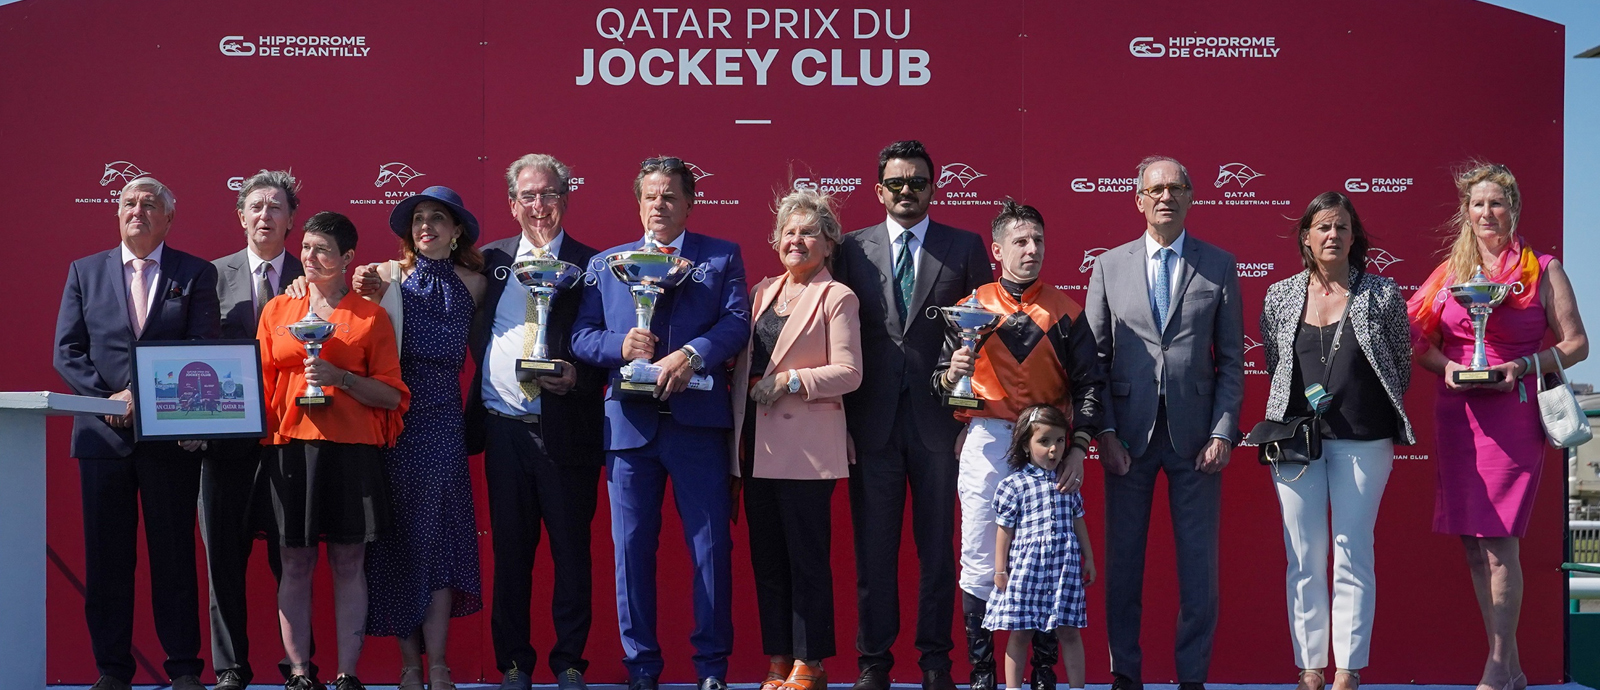 سعادة الشيخ جوعان بن حمد آل ثاني يتوج الفائزين في سباق "جائزة قطر جوكي كلوب" بفرنسا